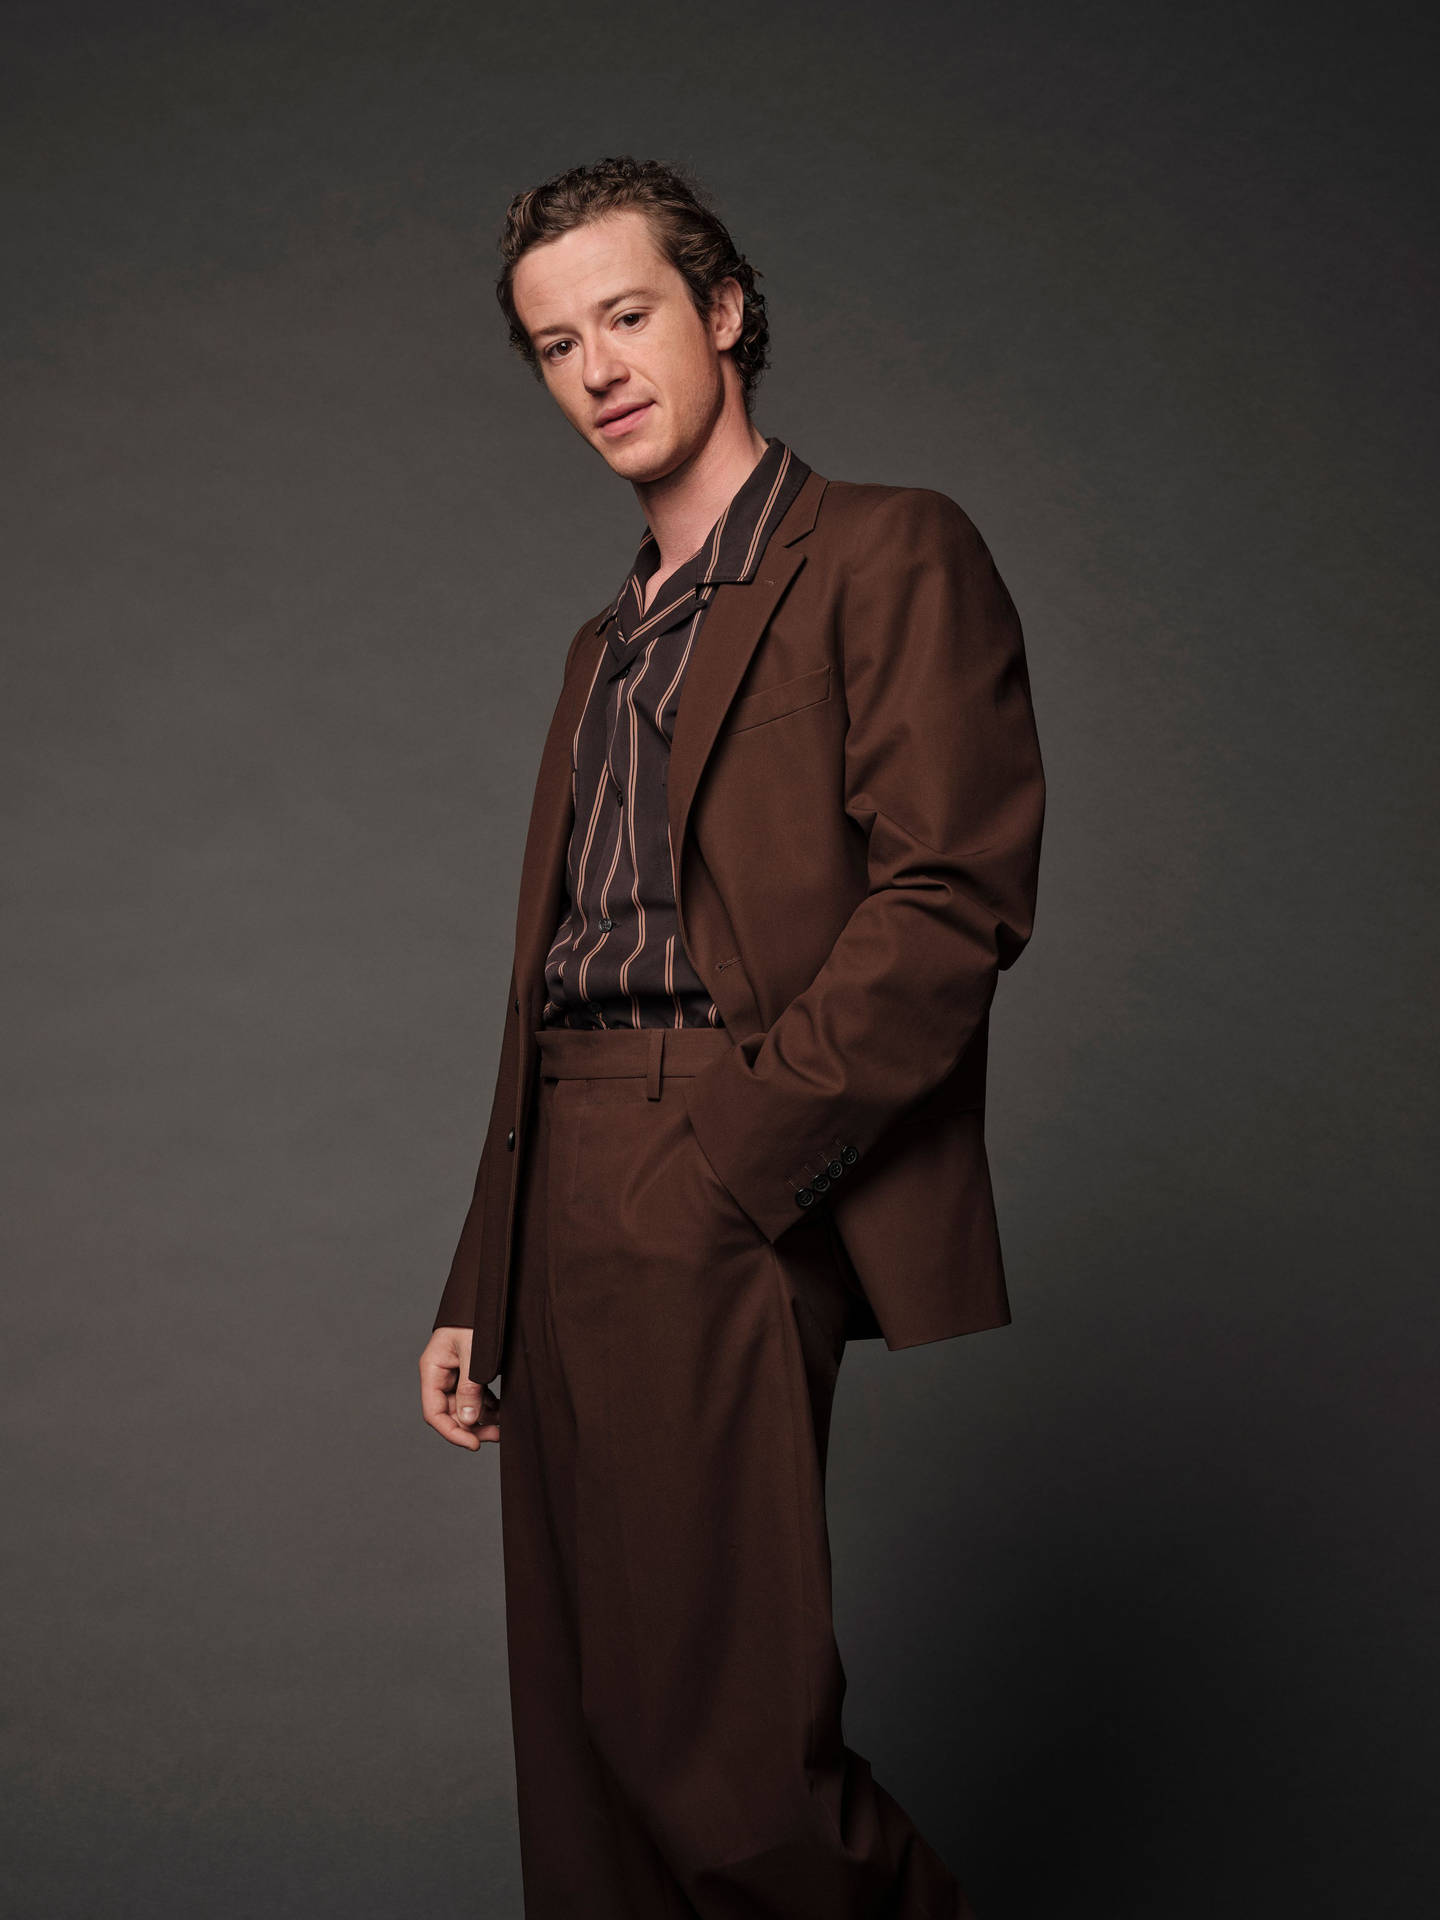 Joseph Quinn In Brown Suit Wallpaper